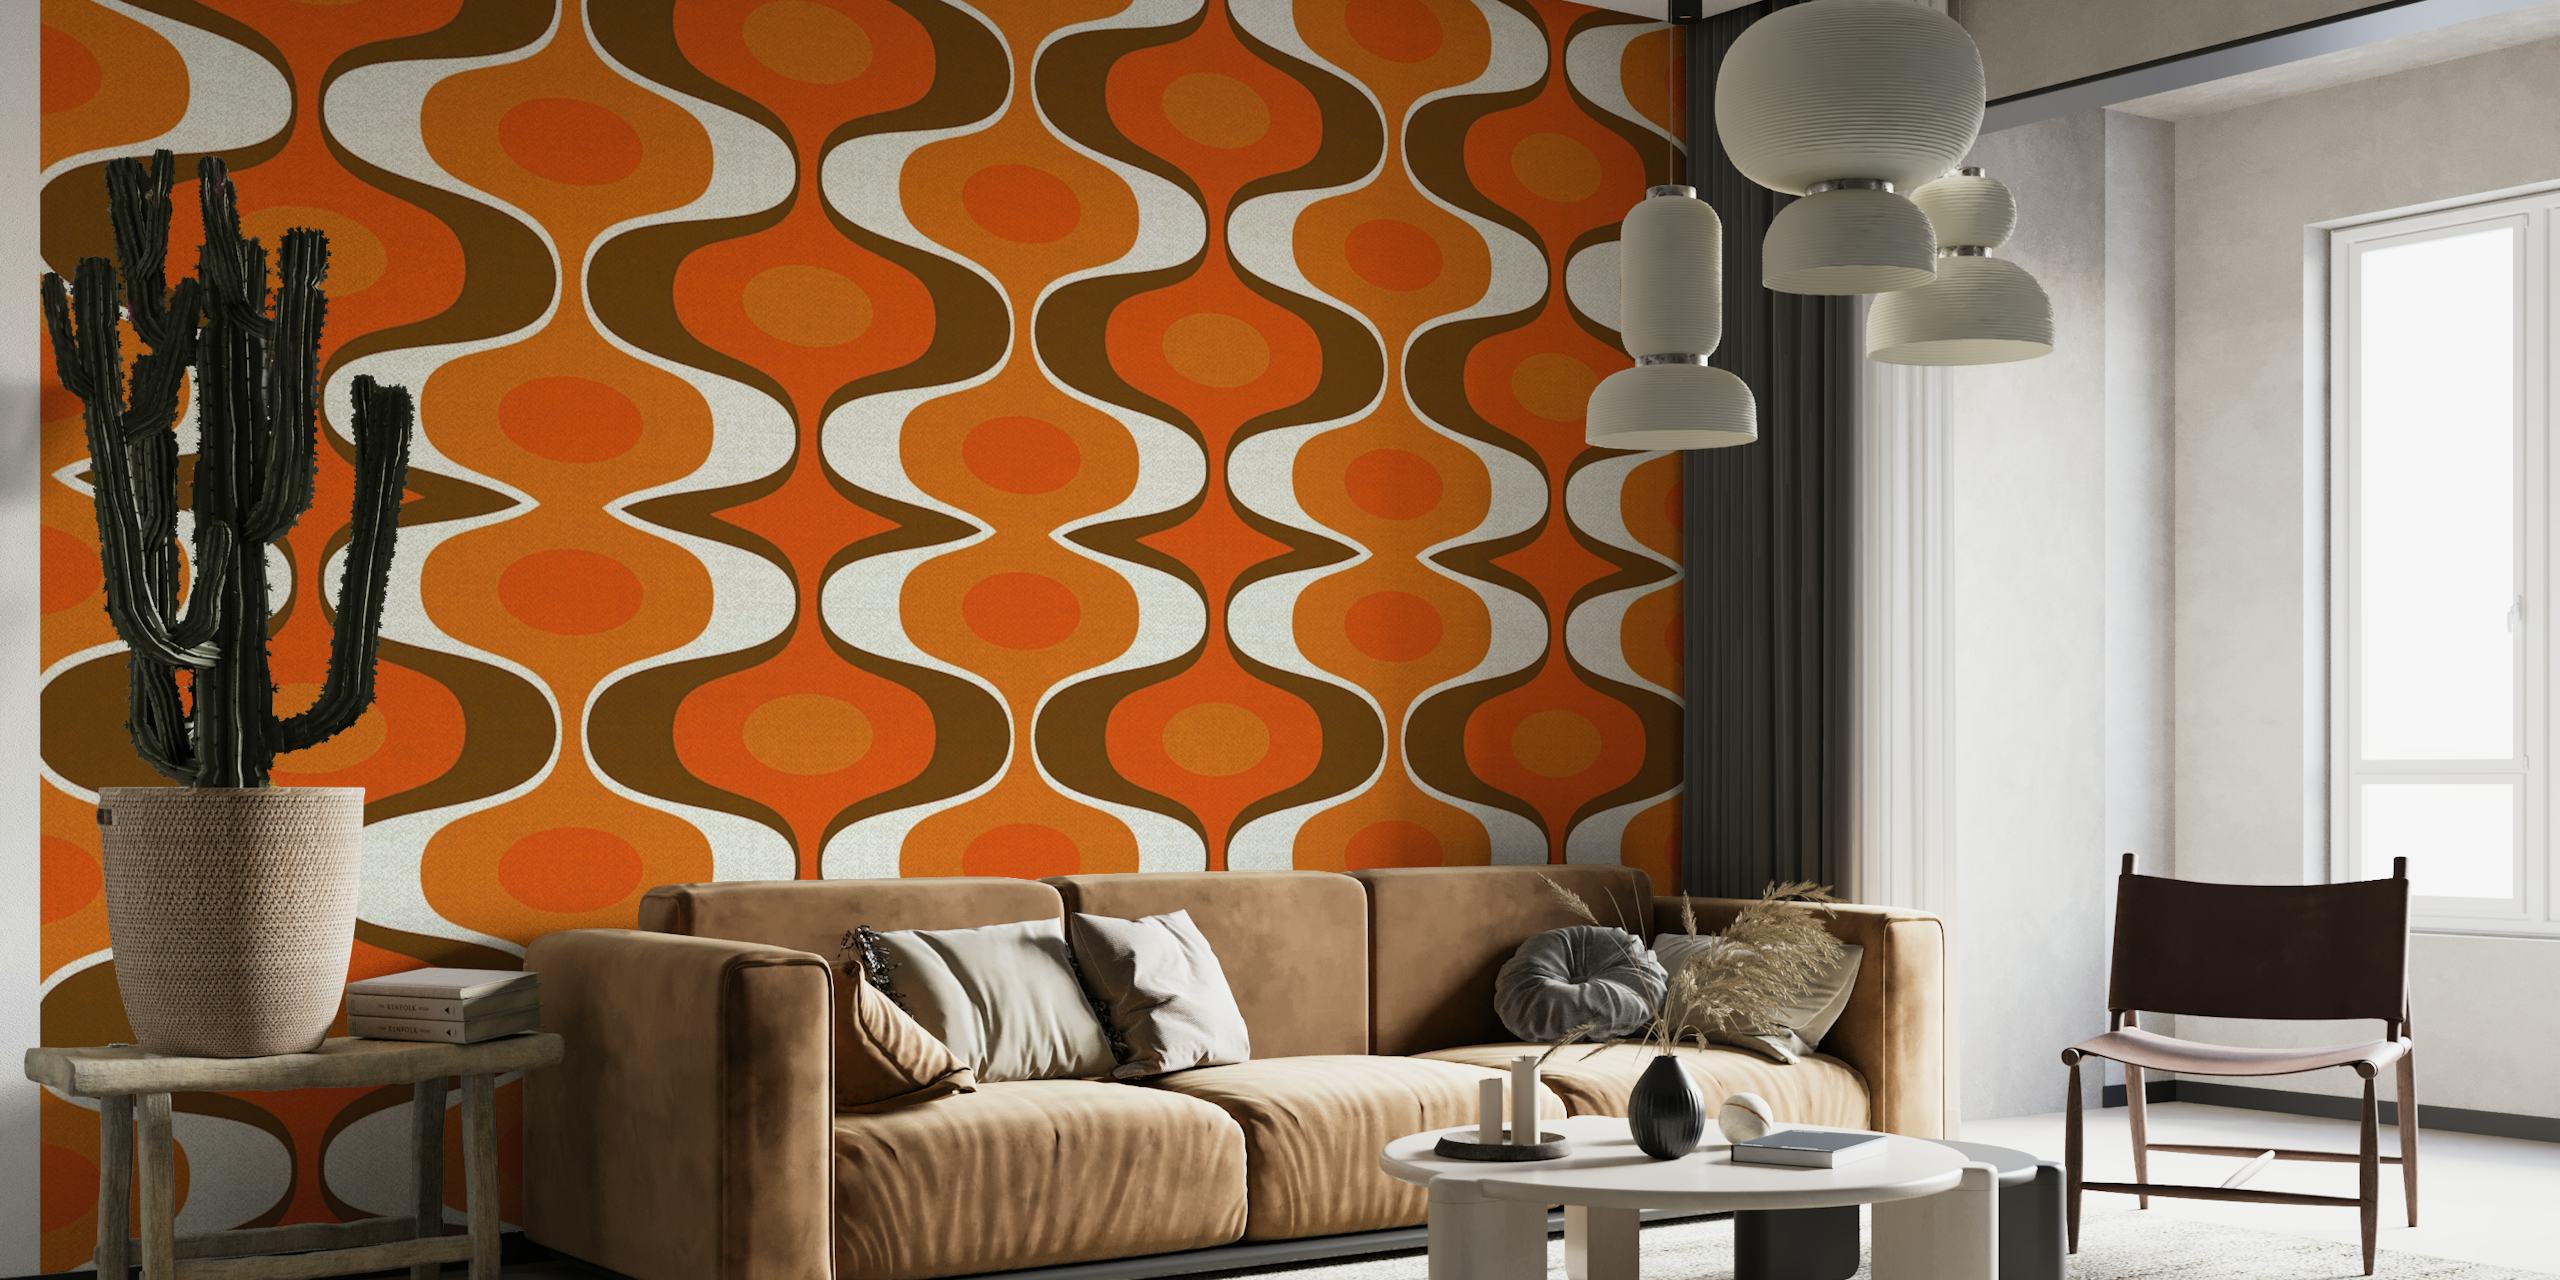 Zidna slika inspirirana starinom s retro groovy uzorkom 70-ih u narančastoj i smeđoj boji.